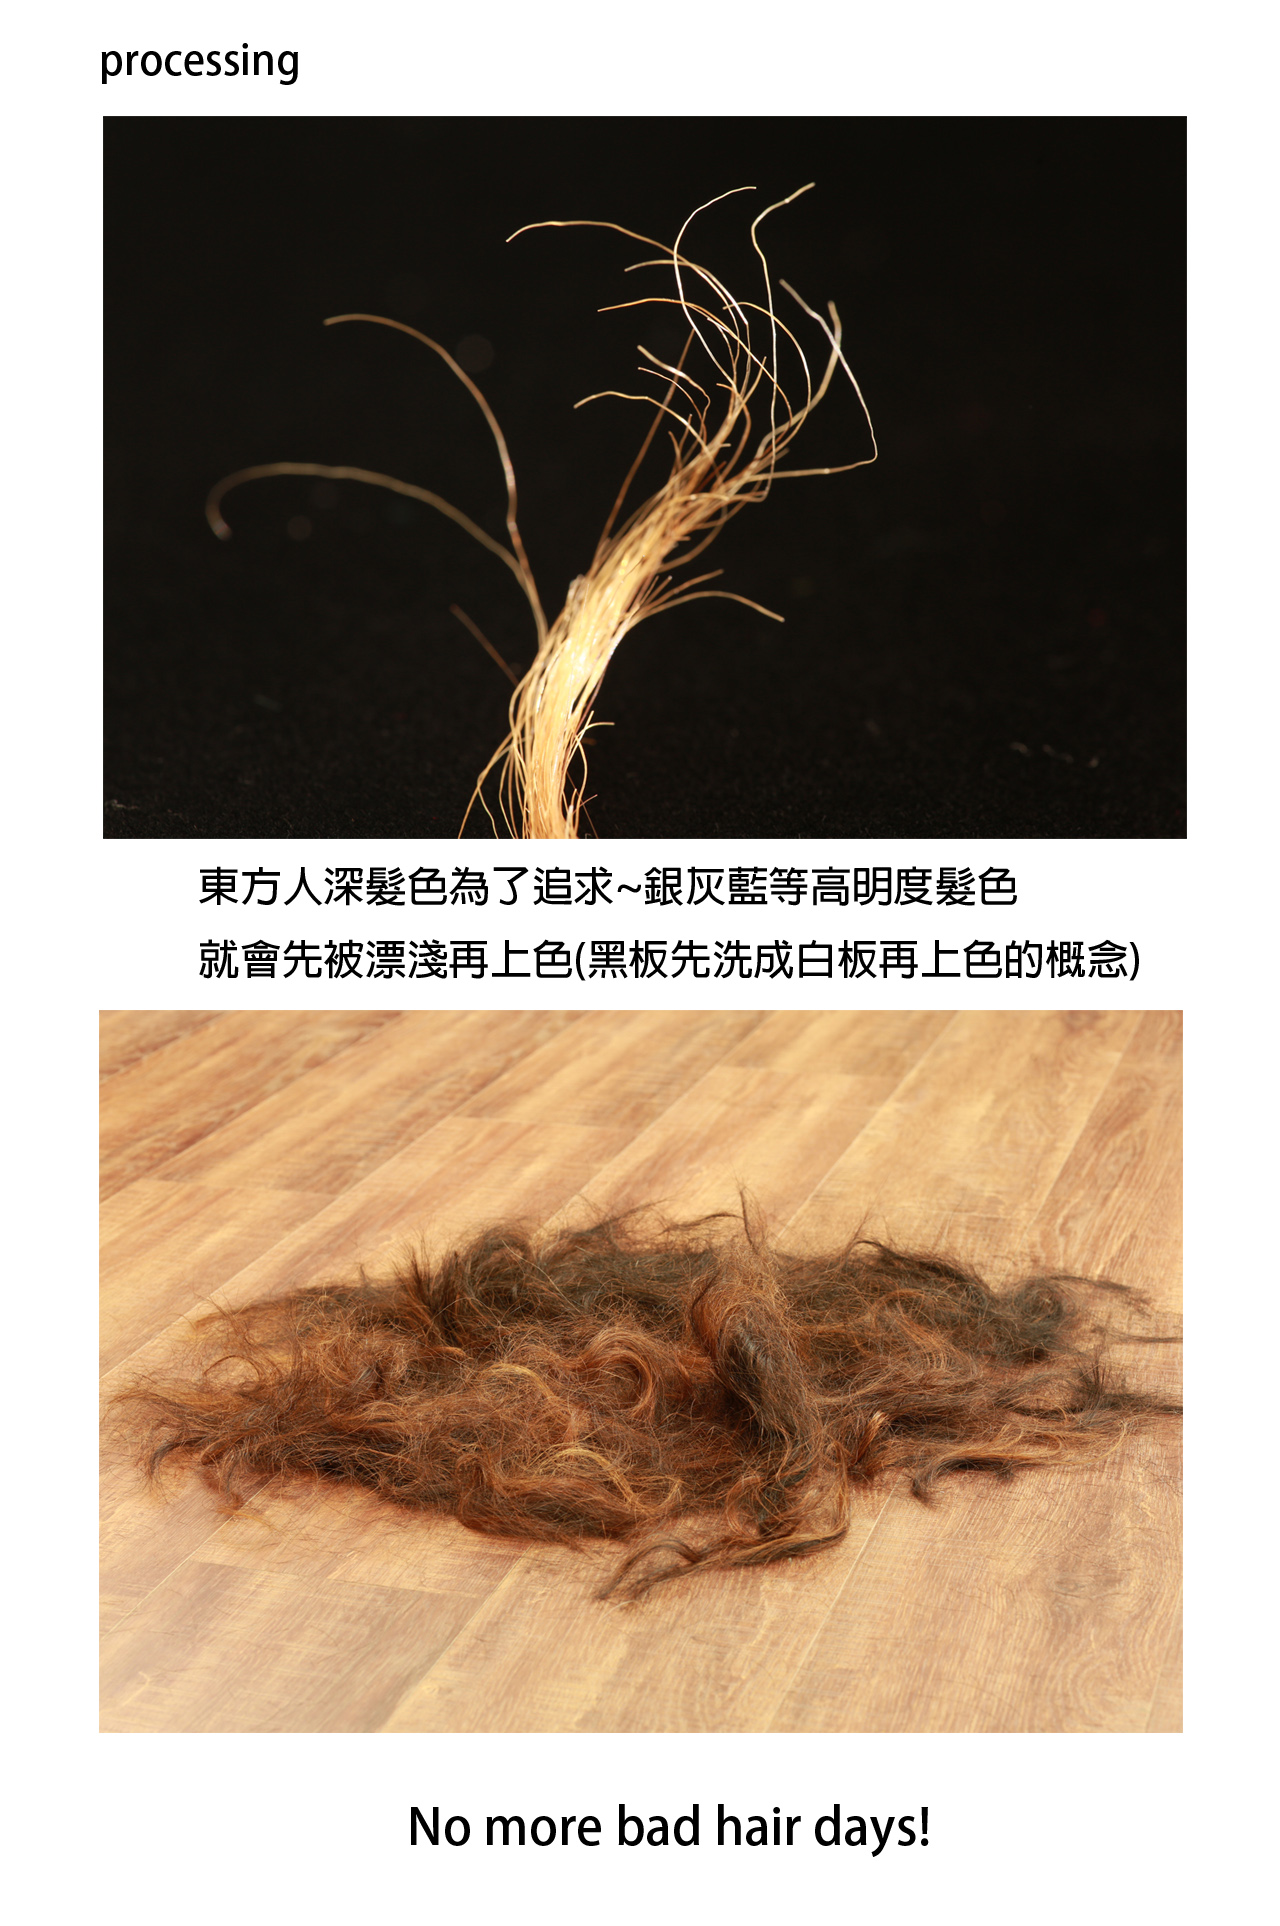 20180105李小姐剪髮中後後漂染髮絲放大圖1